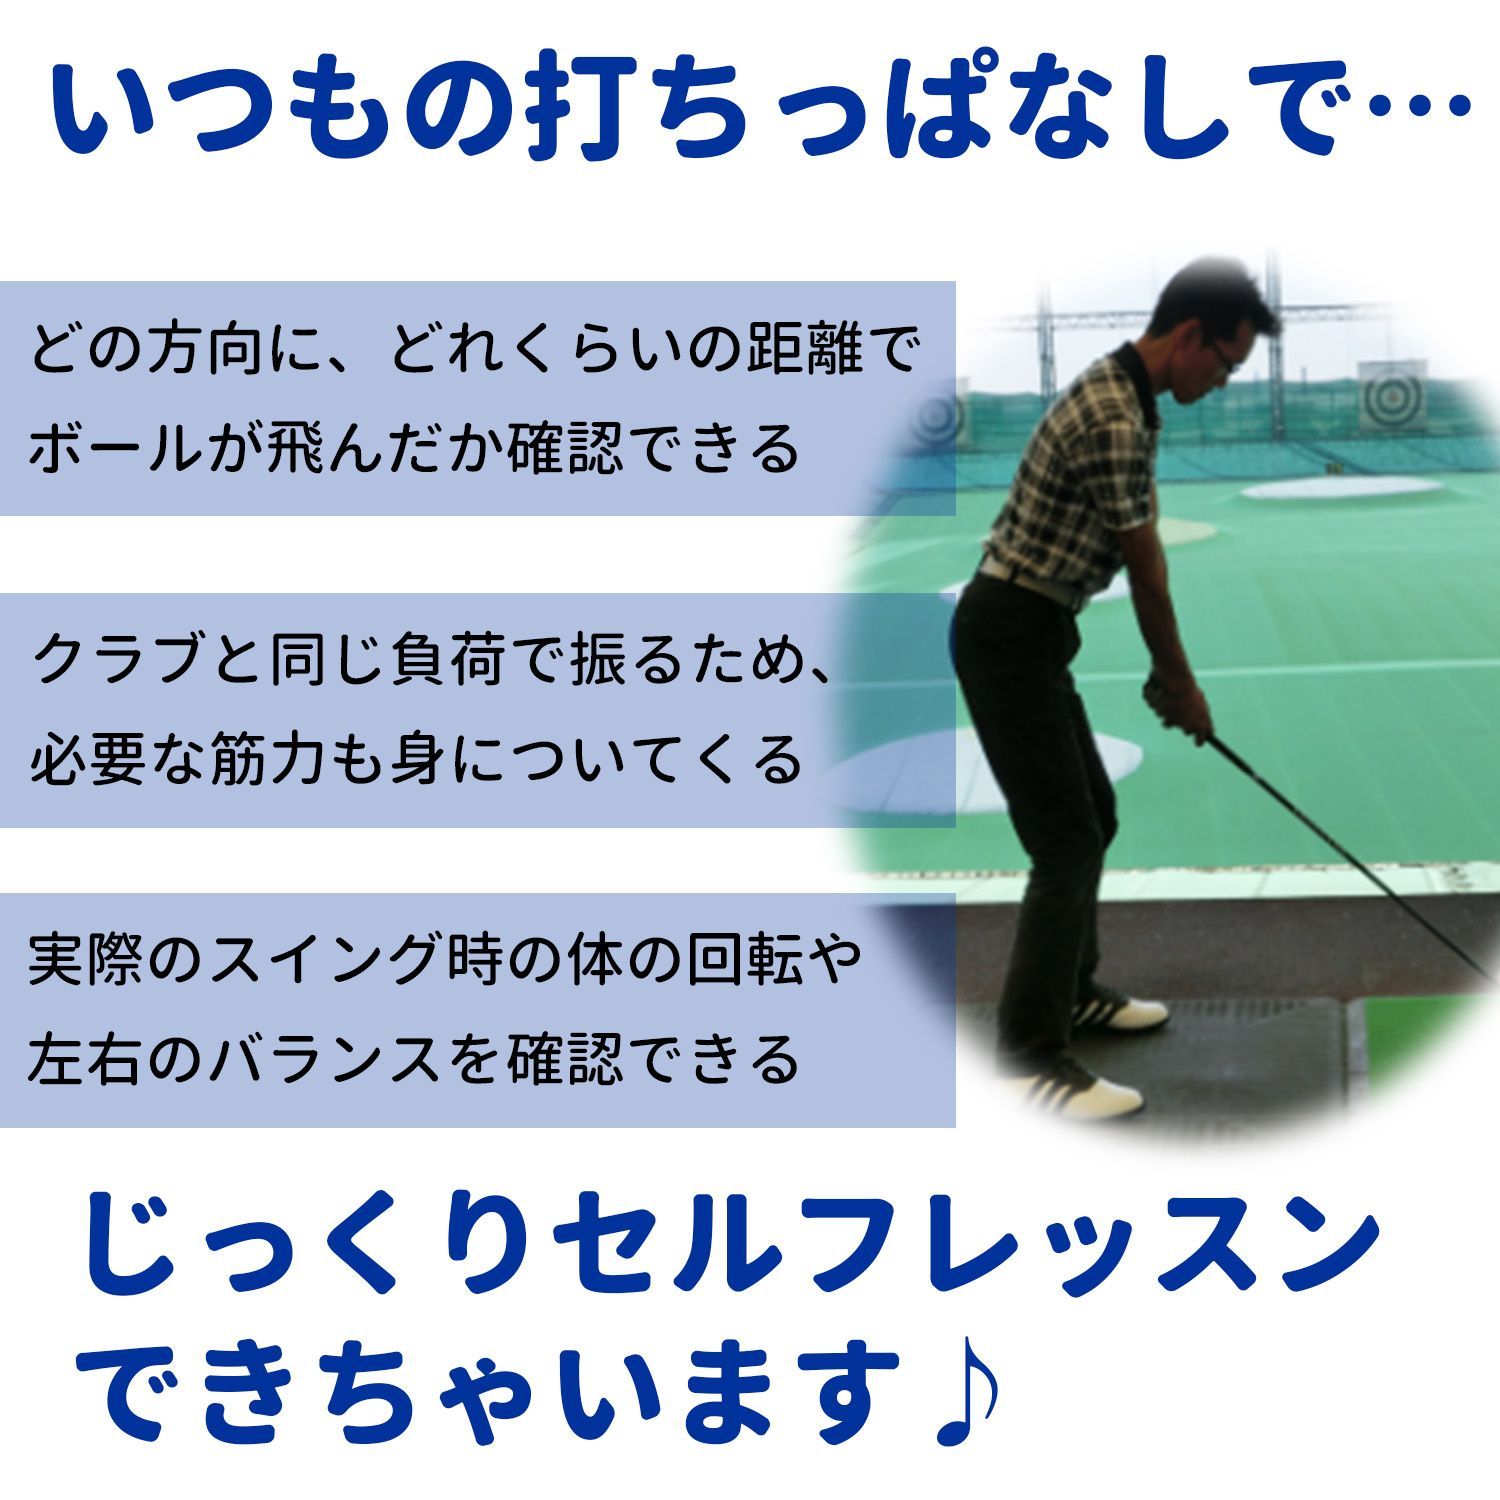 【正規店通販】確認用 ゴルフ グリップ ゴルフ